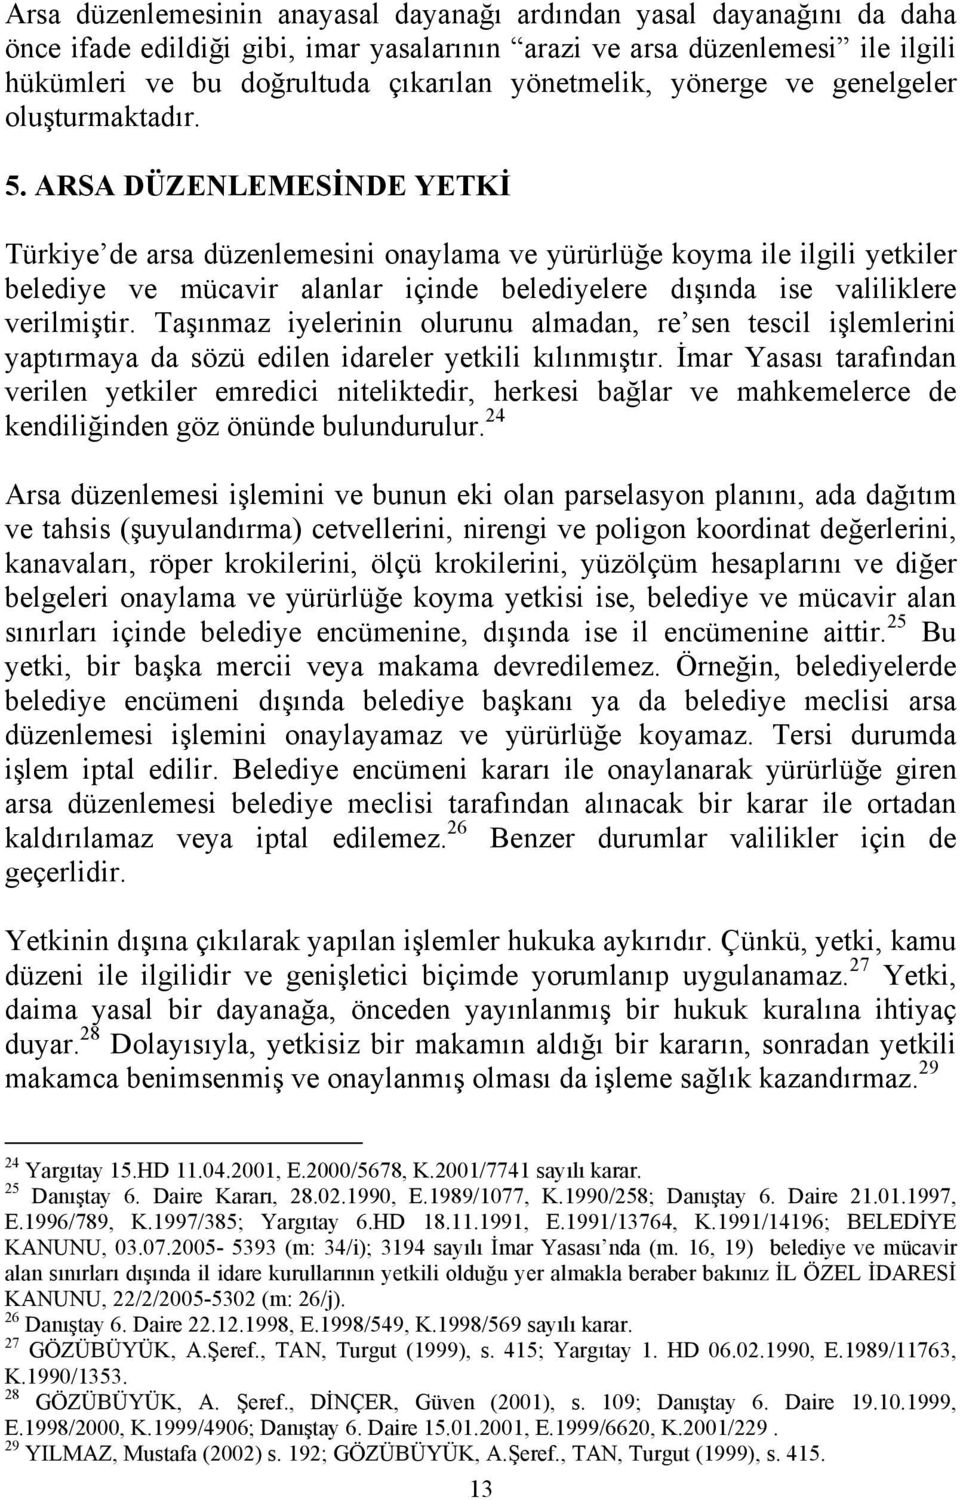 ARSA DÜZENLEMESİNDE YETKİ Türkiye de arsa düzenlemesini onaylama ve yürürlüğe koyma ile ilgili yetkiler belediye ve mücavir alanlar içinde belediyelere dışında ise valiliklere verilmiştir.